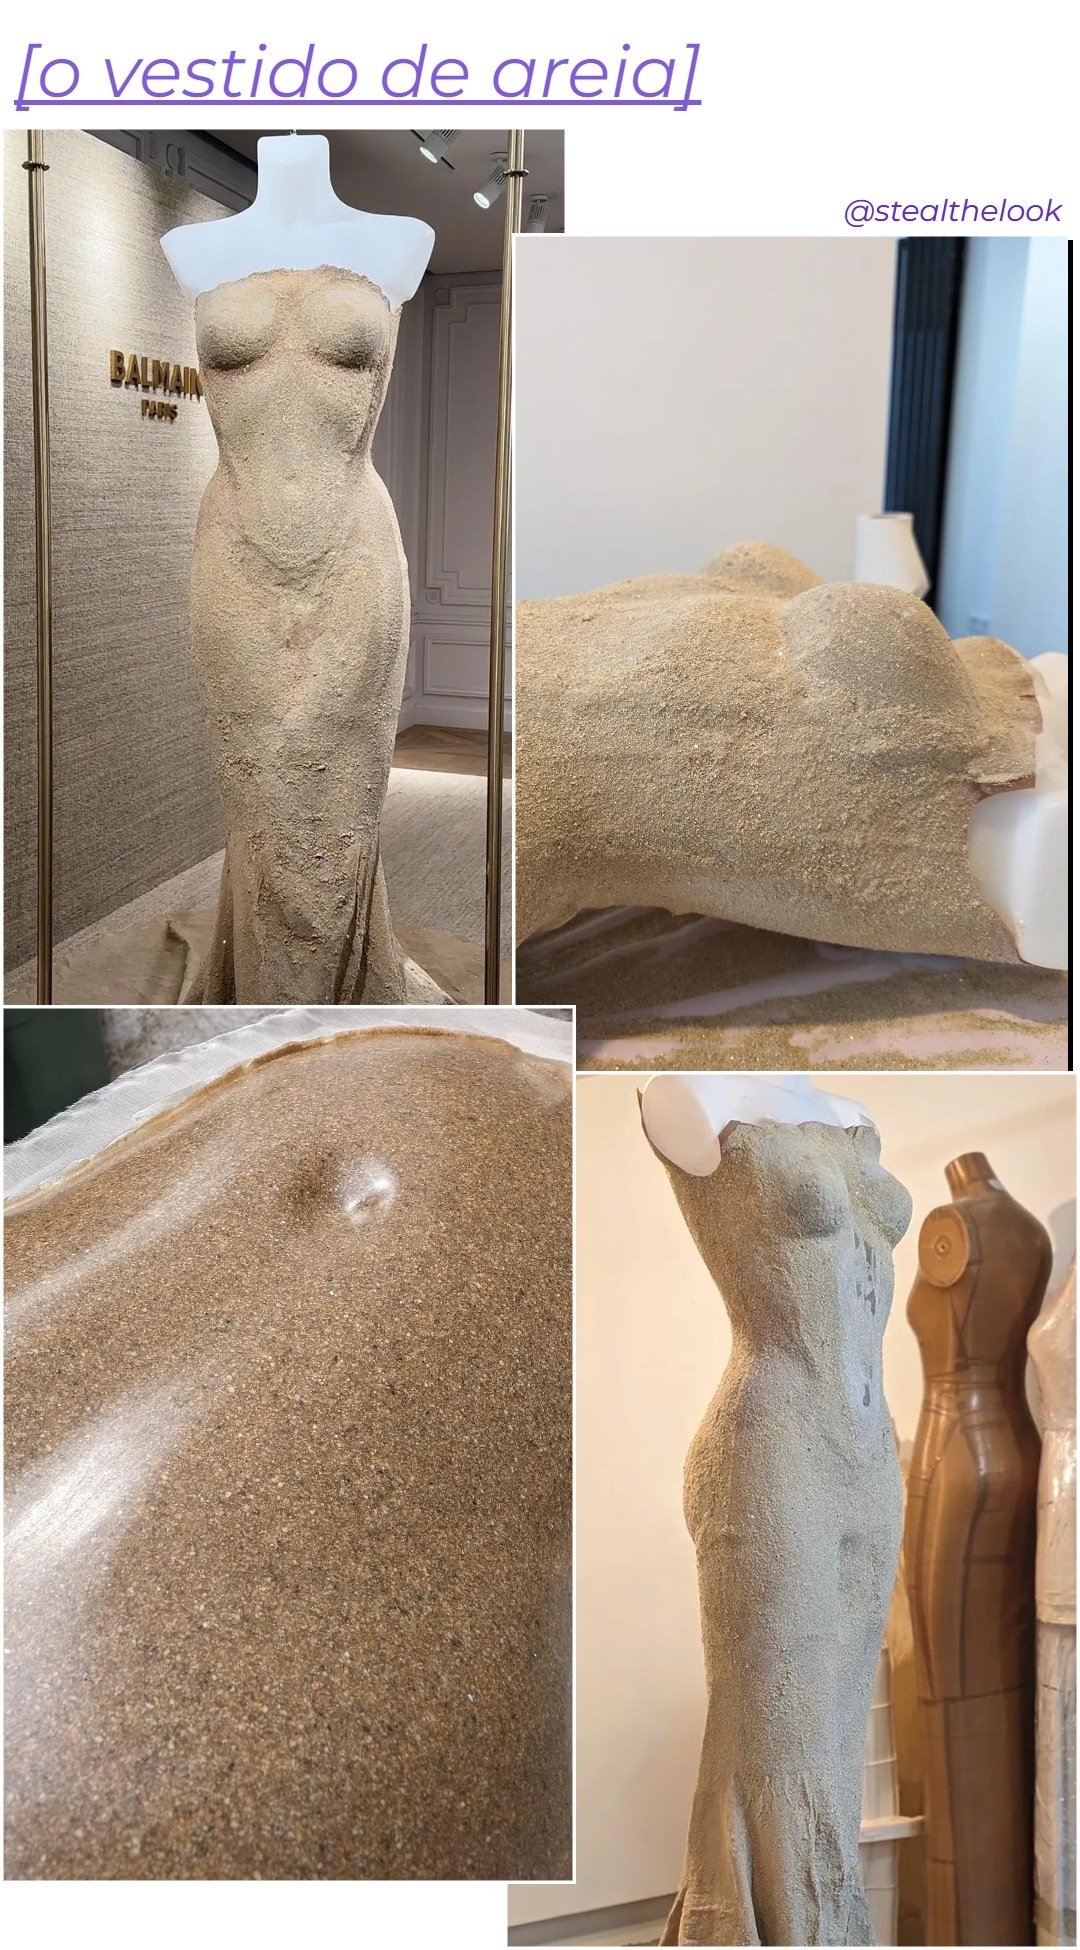 Vestido de Areia - N/A - vestido de areia - primavera - colagem de imagens - https://stealthelook.com.br